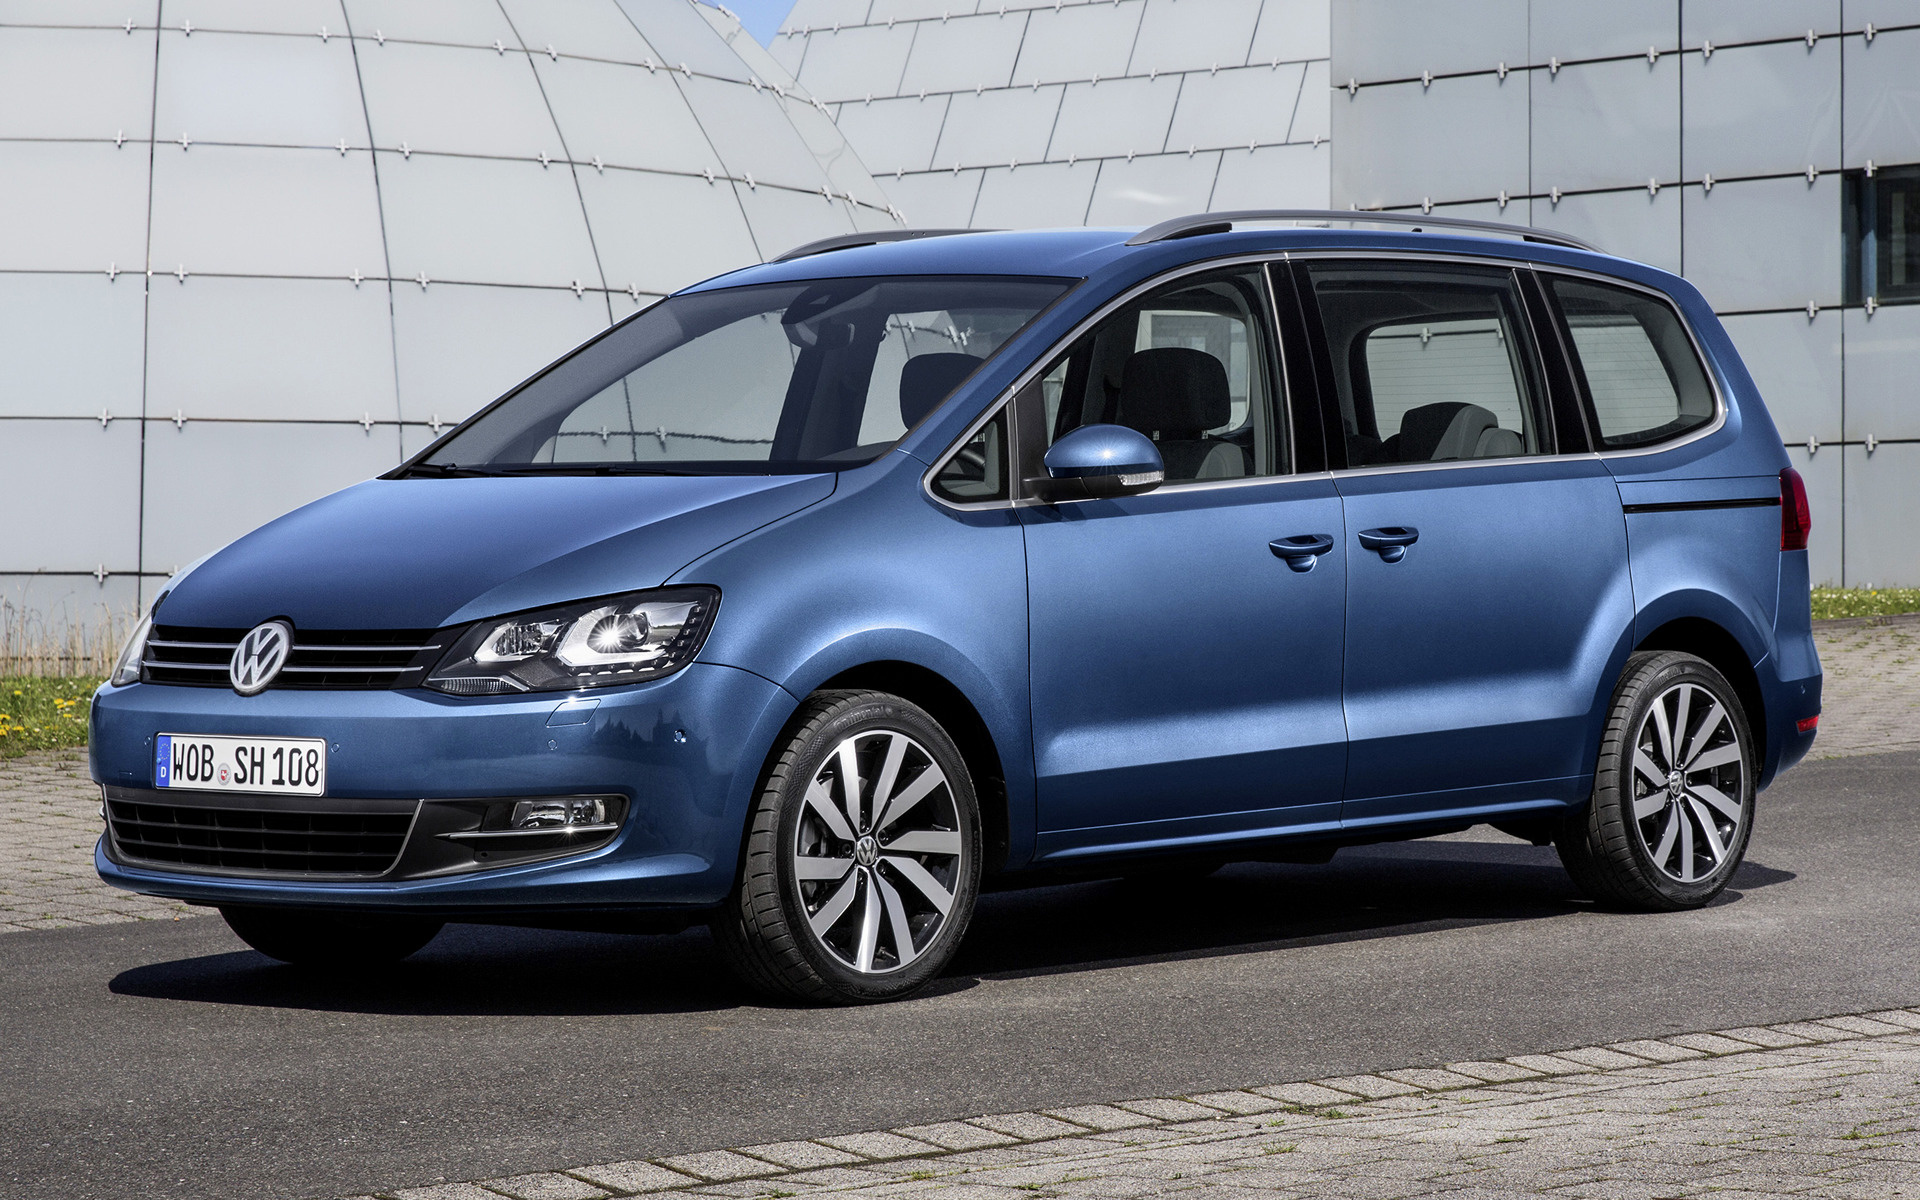 Volkswagen Sharan and HD Image